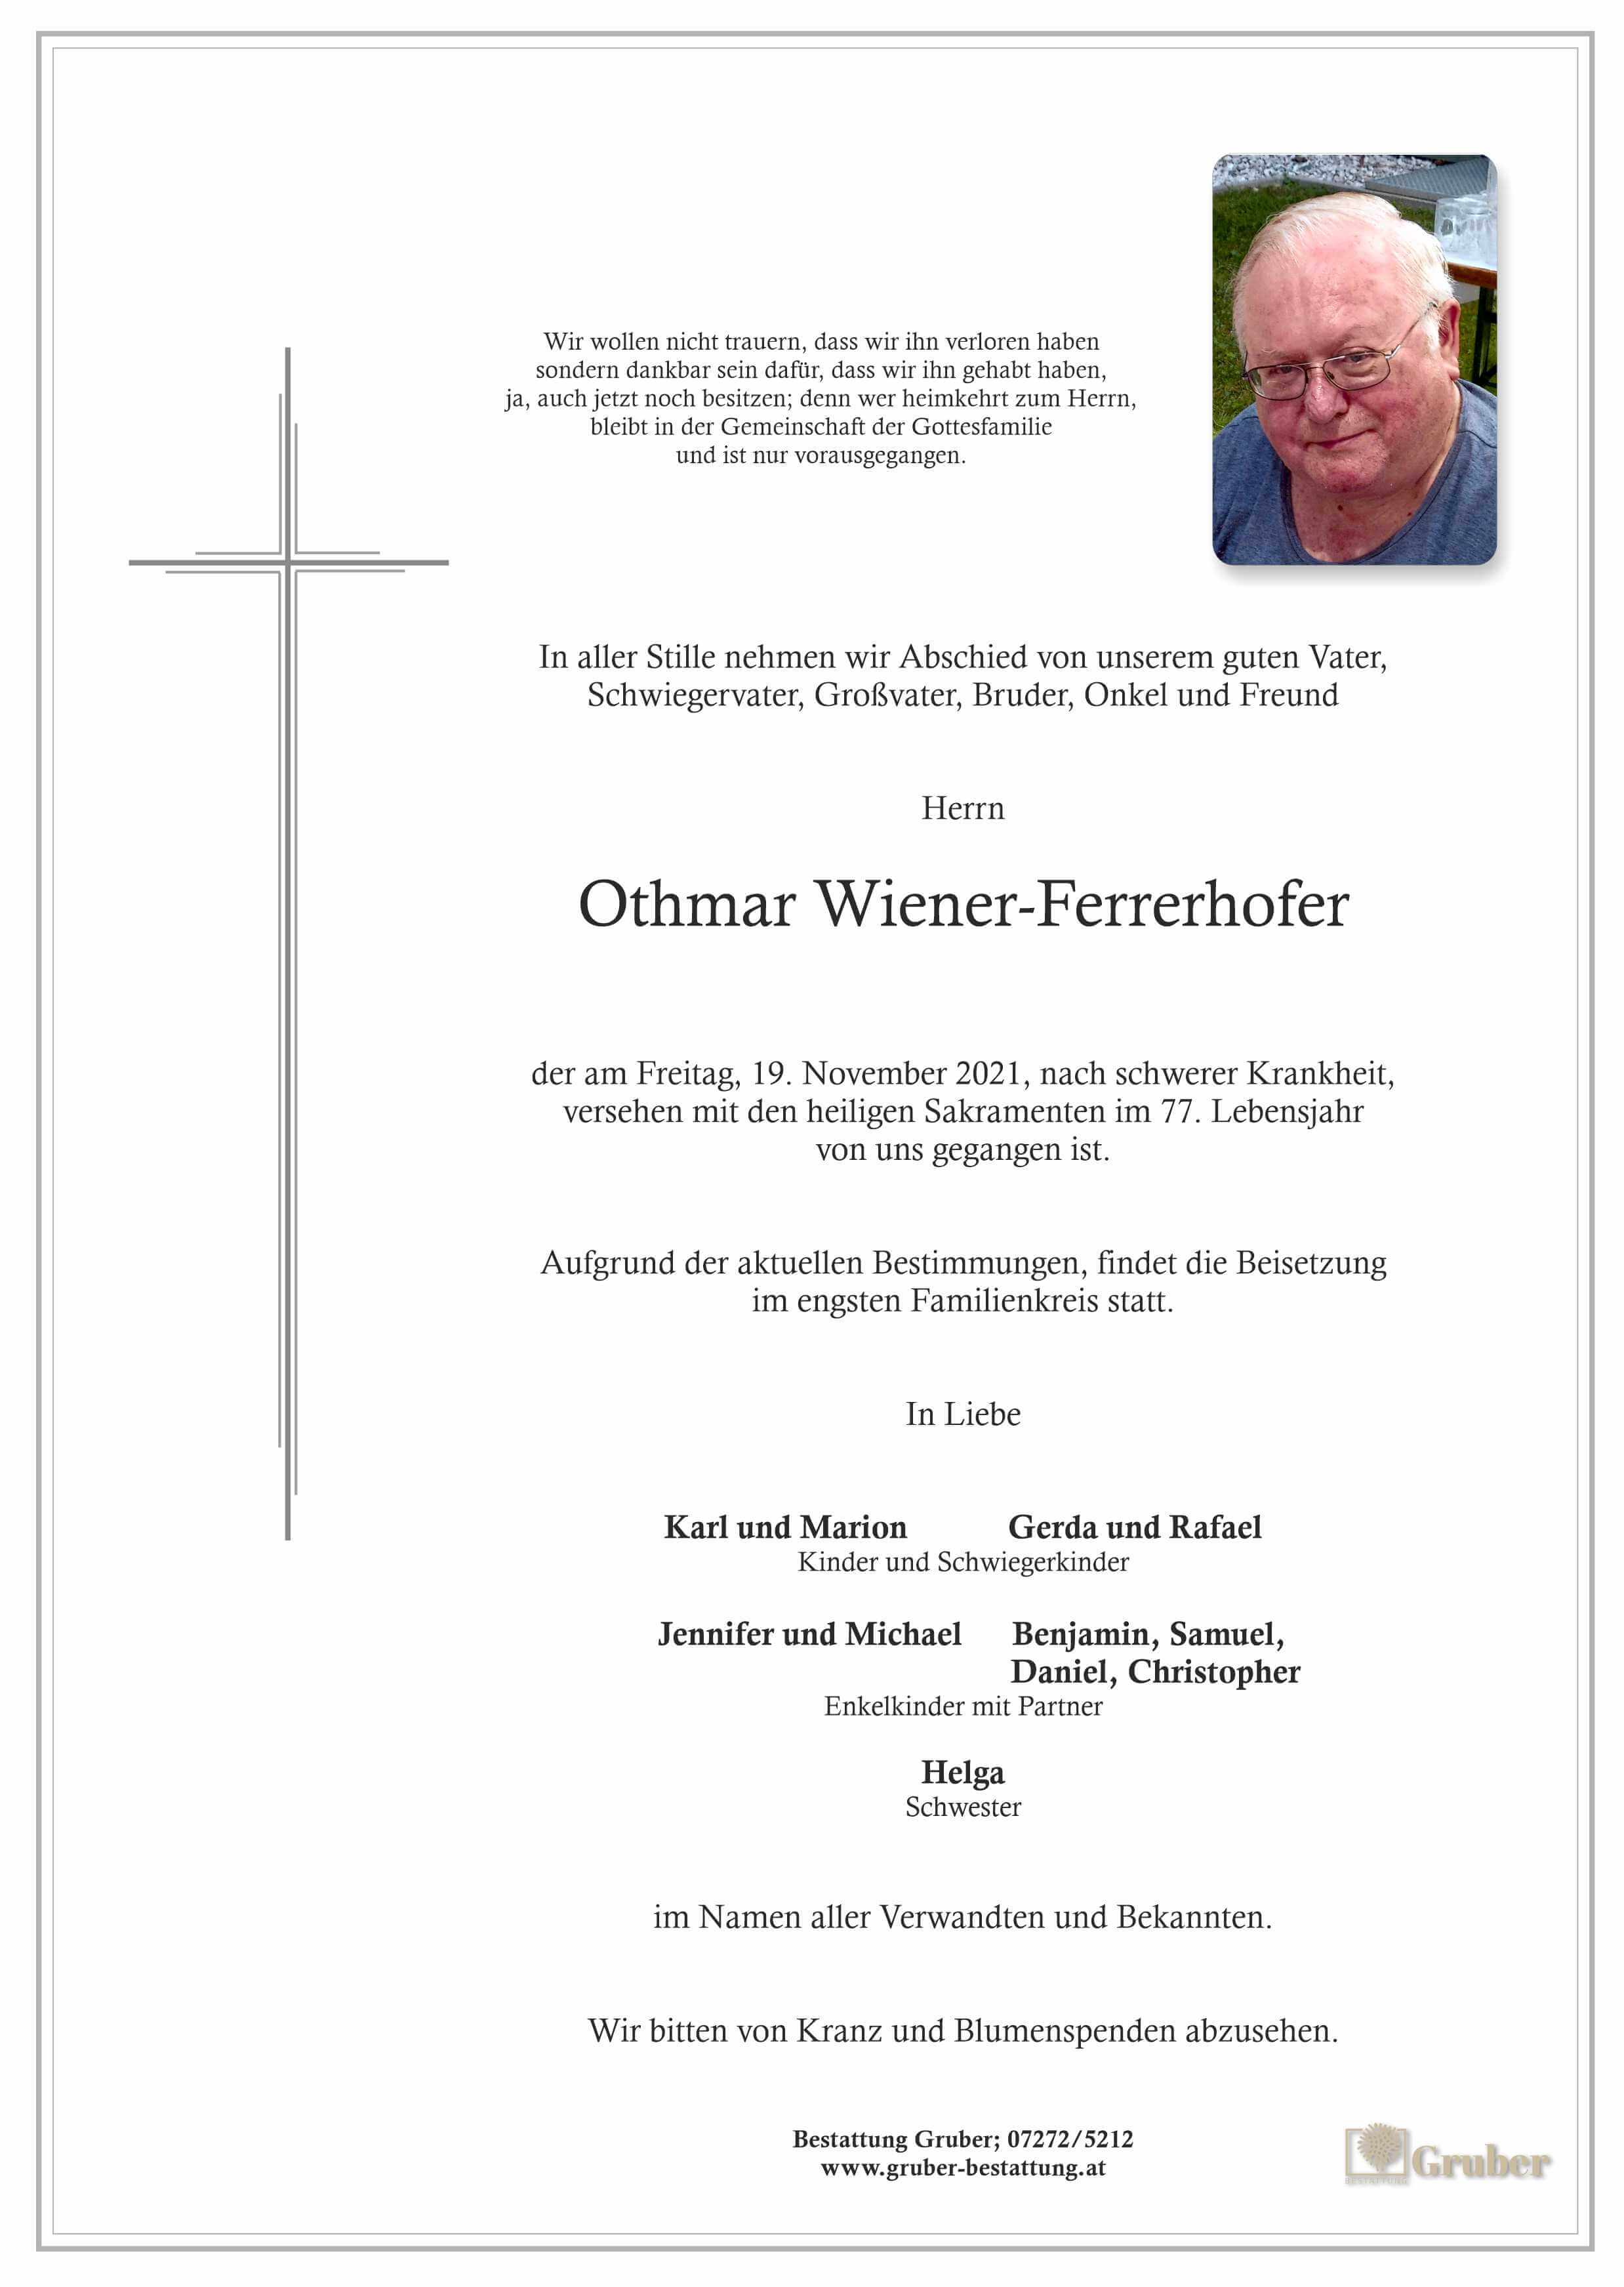 Othmar Wiener-Ferrerhofer (Wels)